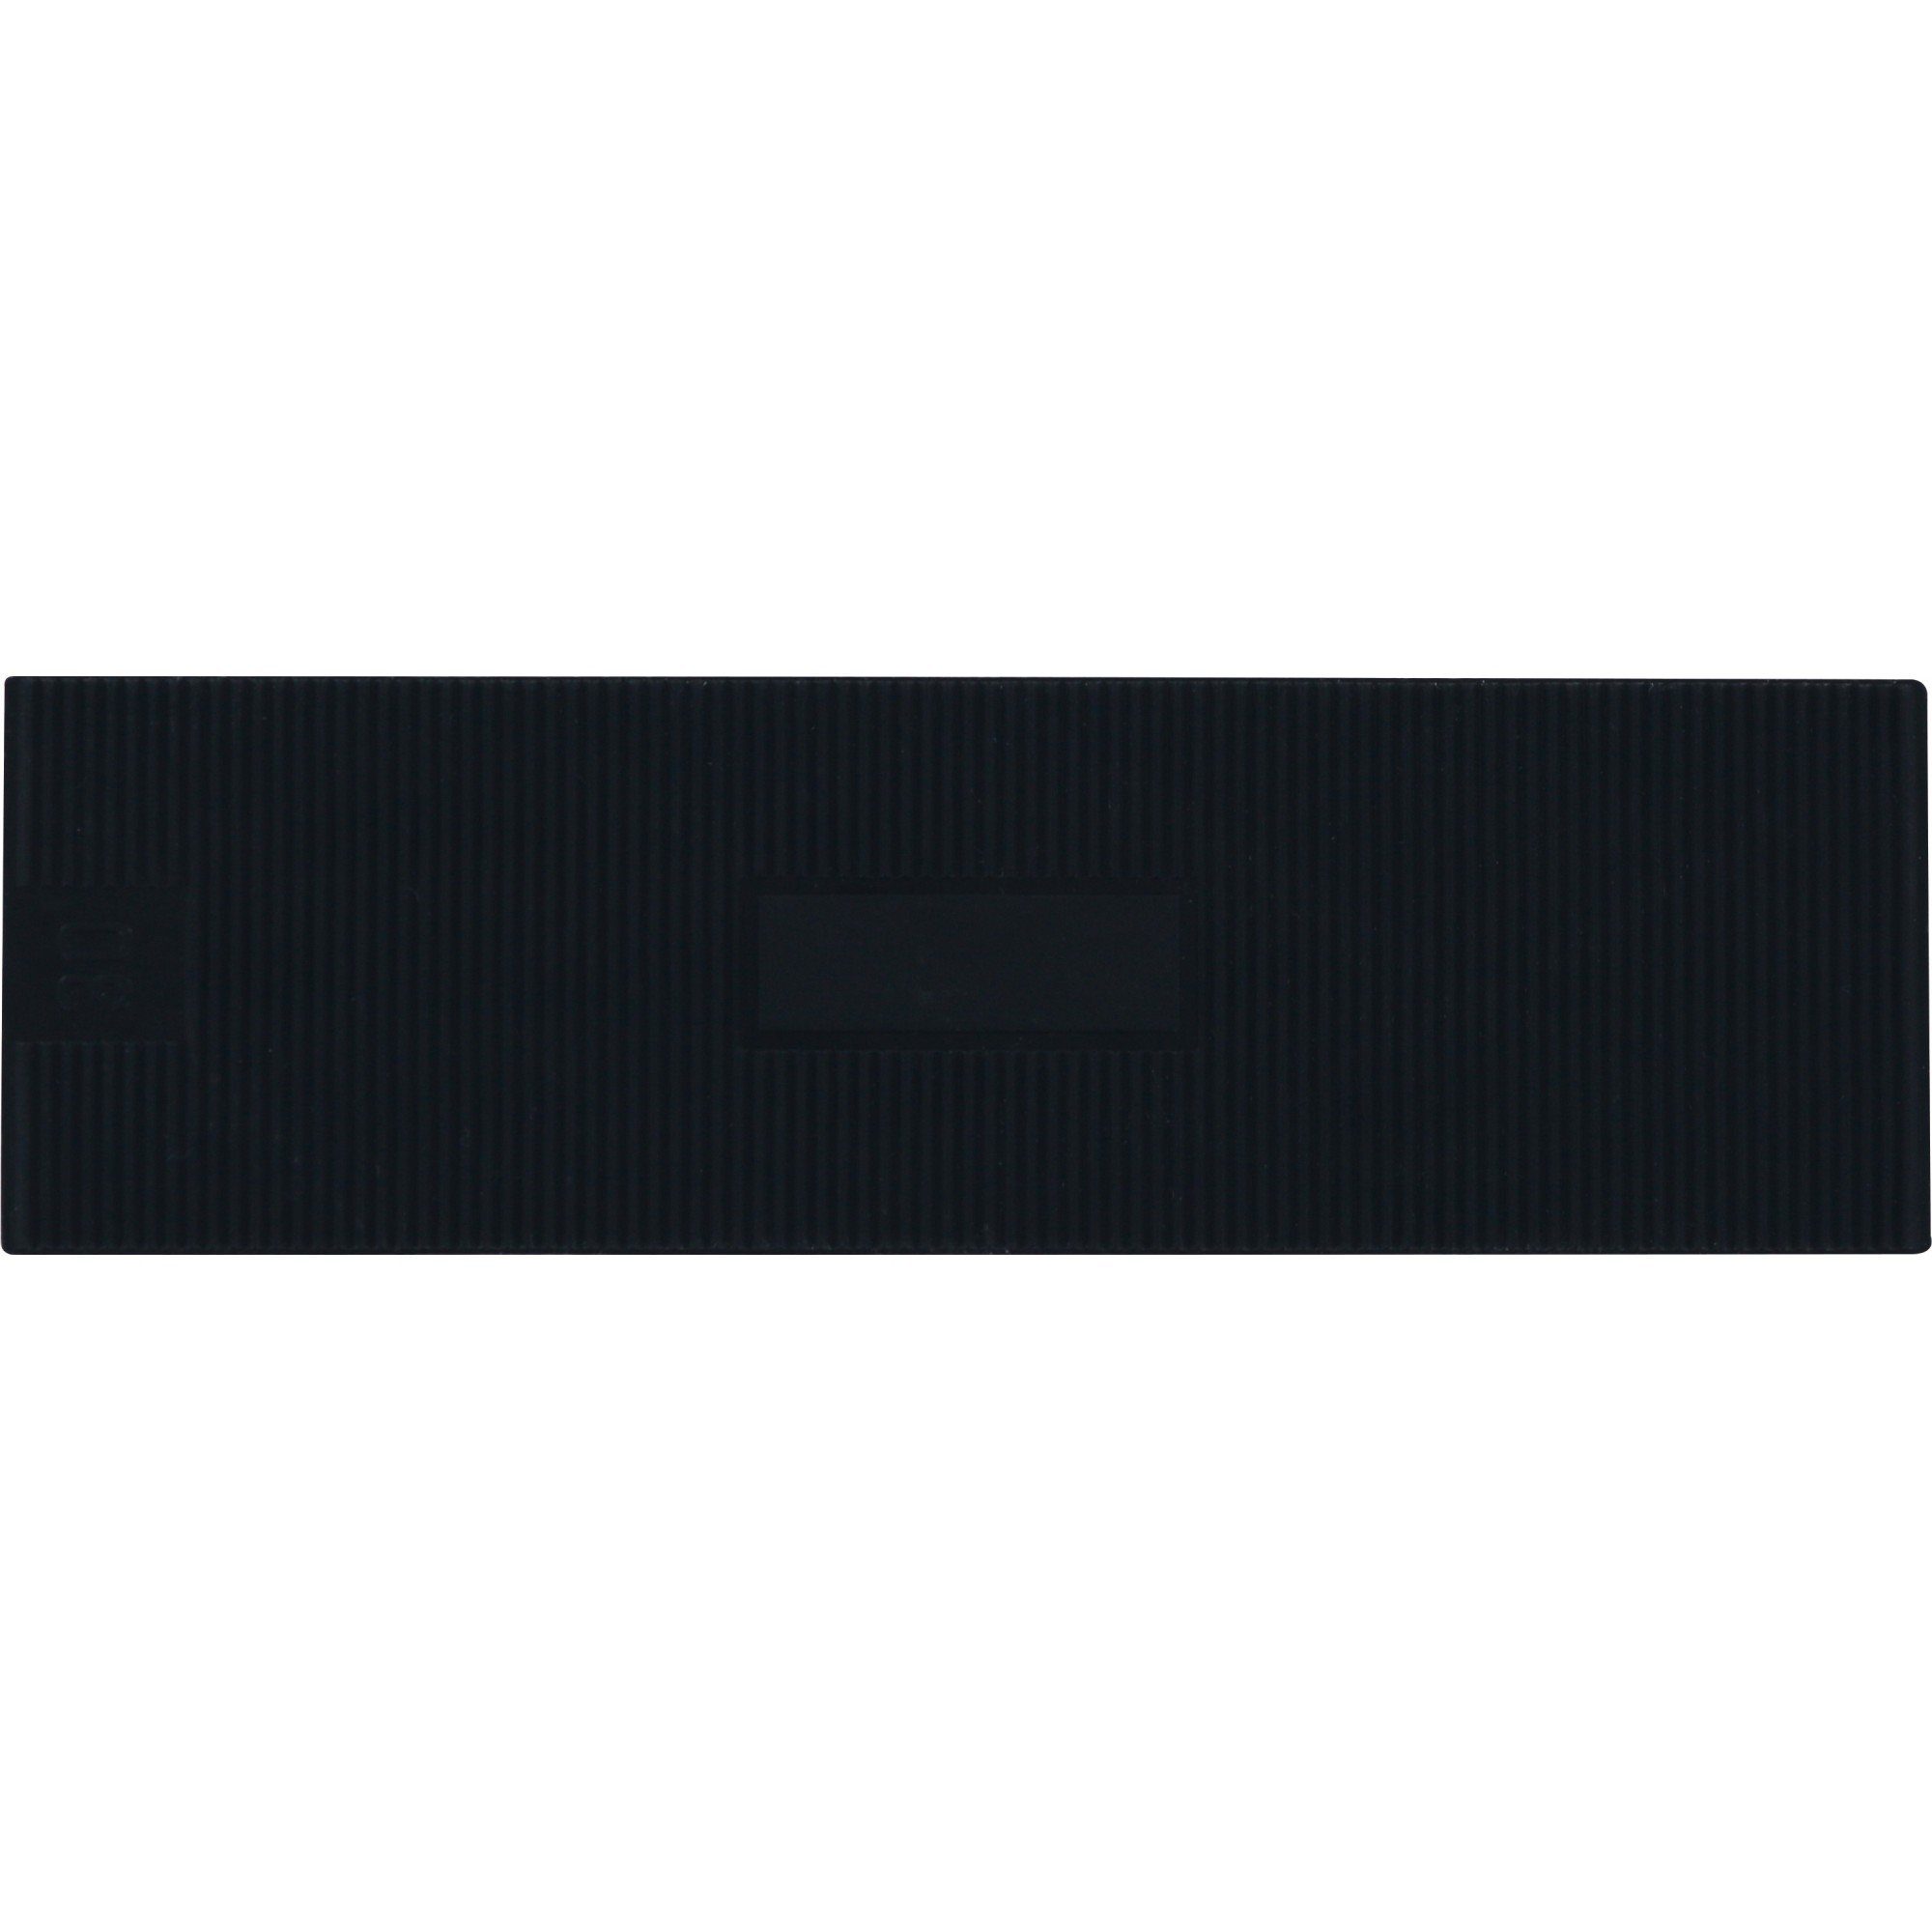 Triuso Verlegekeil PP Verglasungsklötze Montagekeile Unterlegplättchen 100 x 30mm schwarz, (25 Stück), hohe Tragfähigkeit - Druckfestigkeit 80 n/mm²